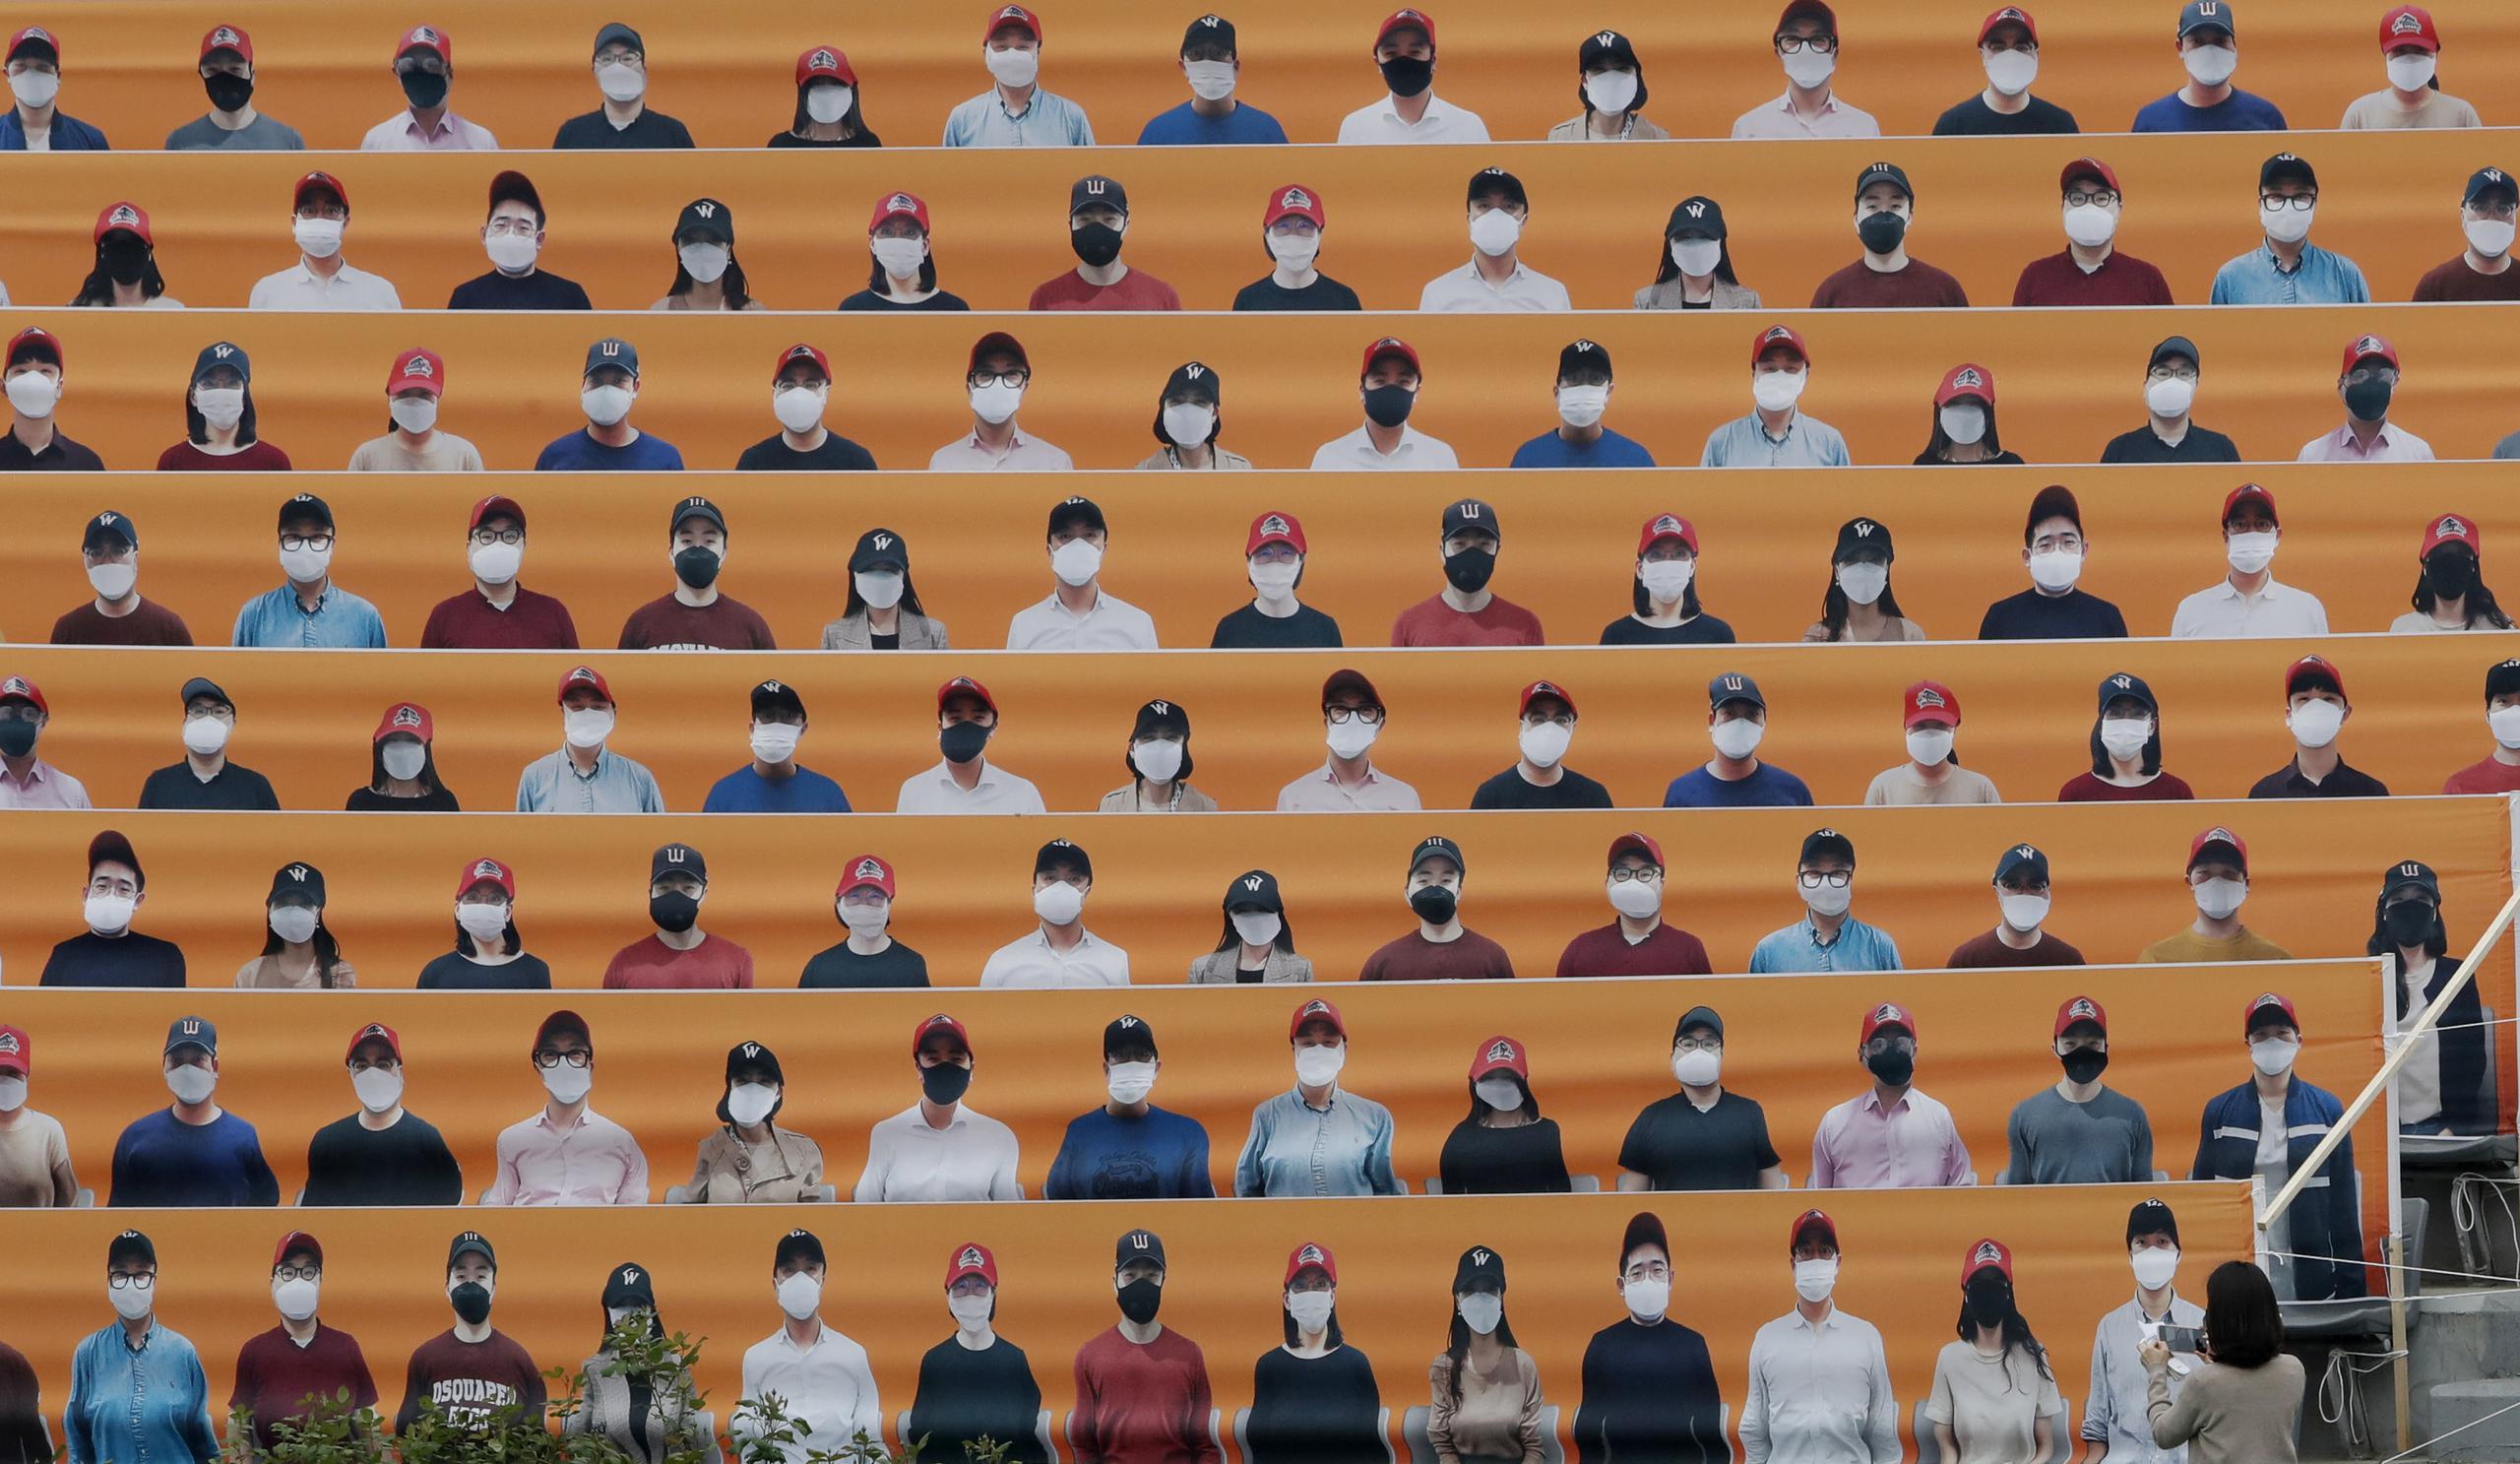 Una mujer toma una foto de las gradas del estadio, cubierta con fotos de aficionados, previo a un juego de la liga de béisbol de Corea del Sur en Incheon.